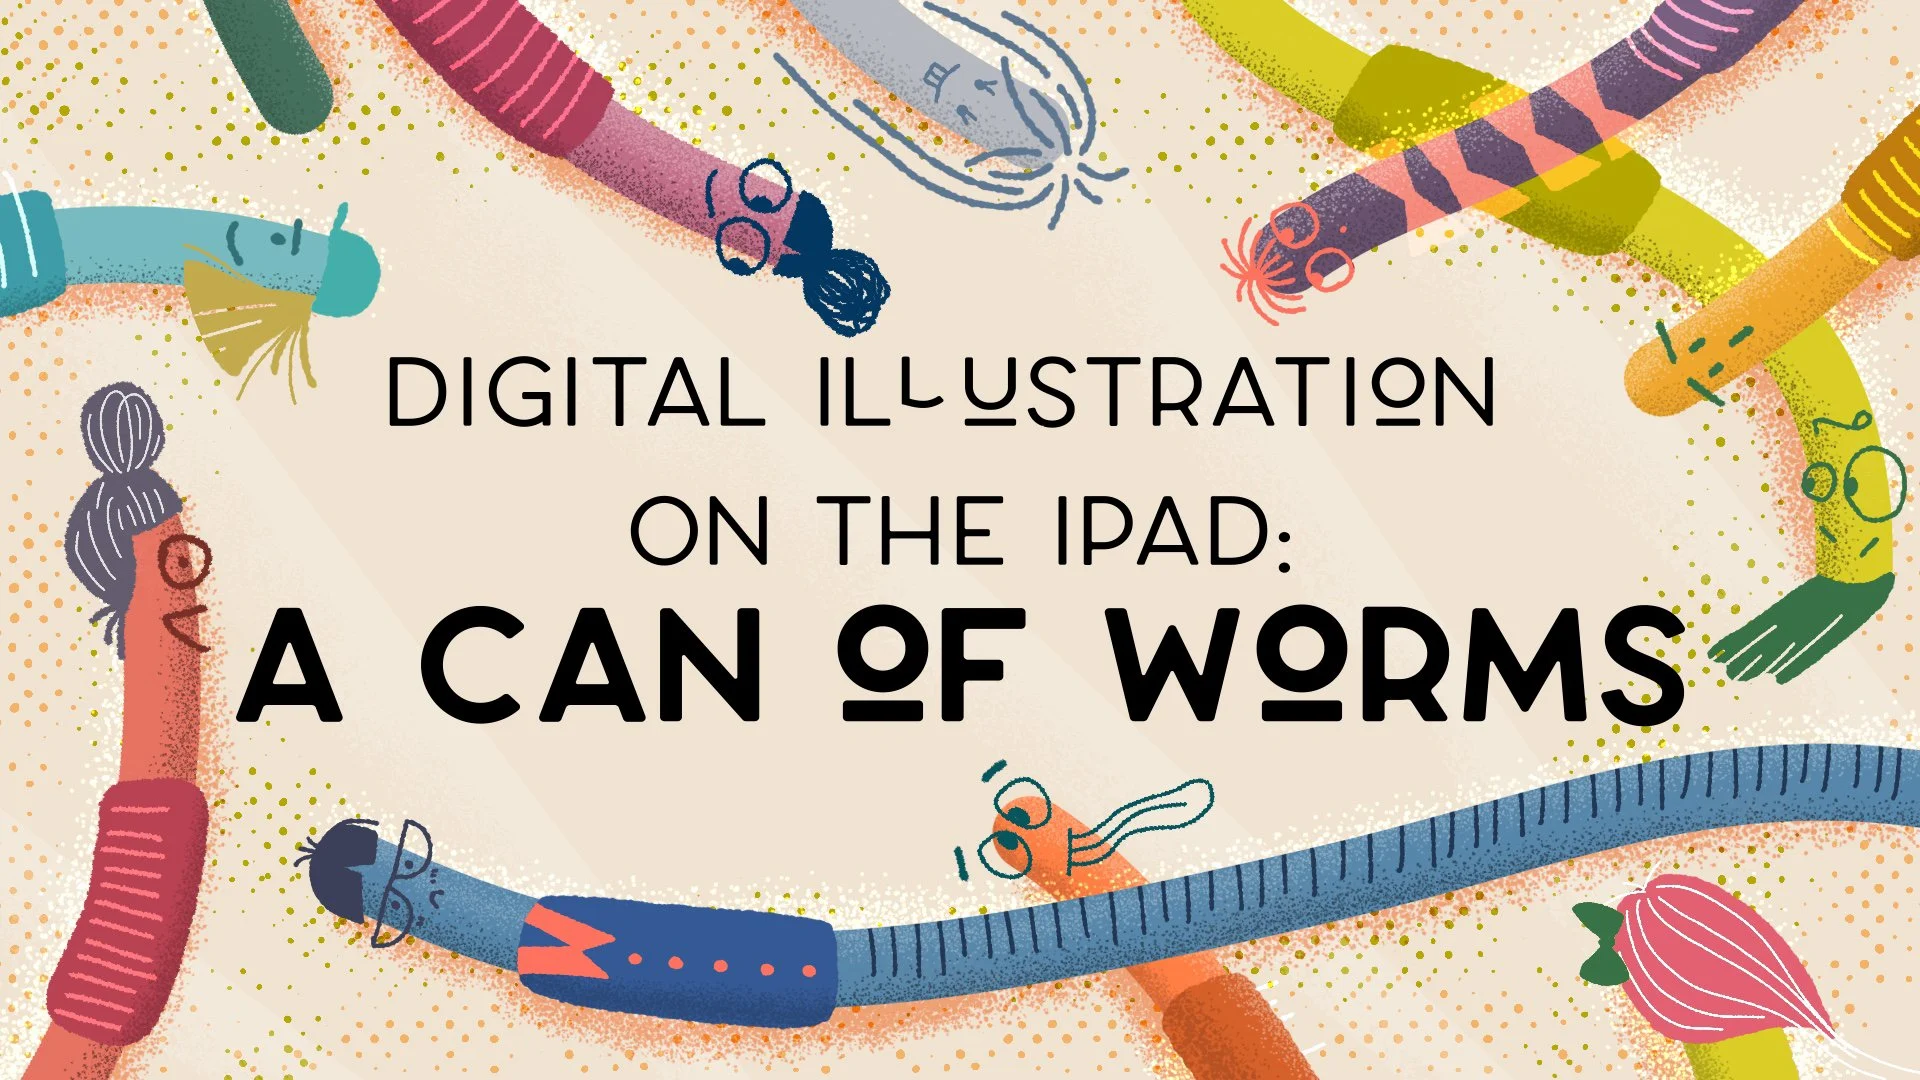 آموزش تصویر دیجیتال در iPad: قوطی کرم